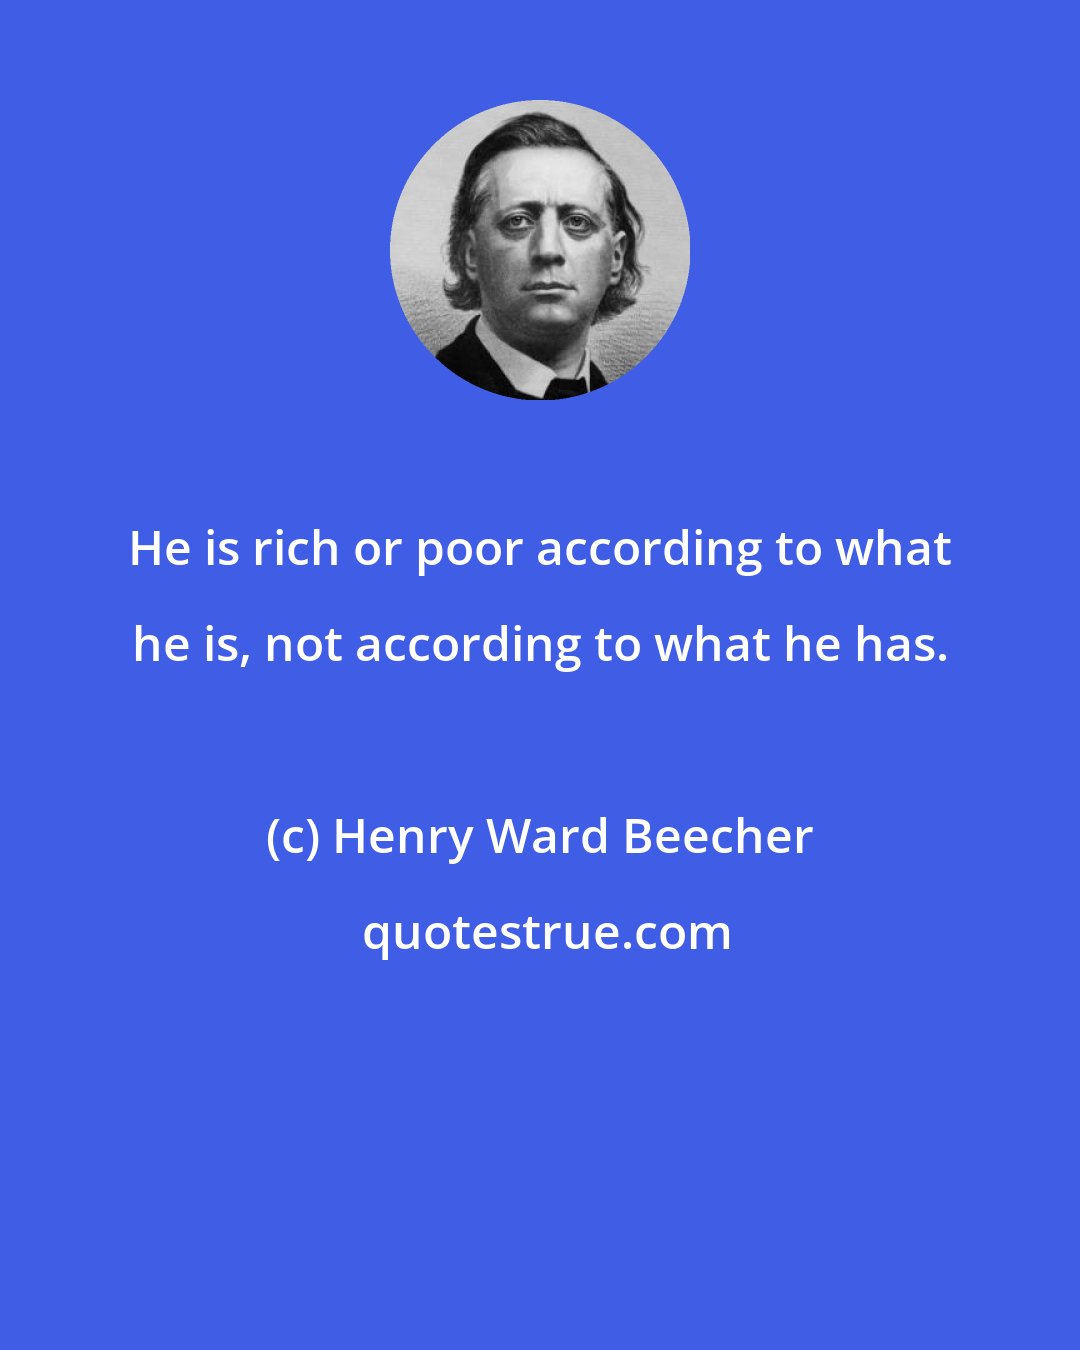 Henry Ward Beecher: He is rich or poor according to what he is, not according to what he has.